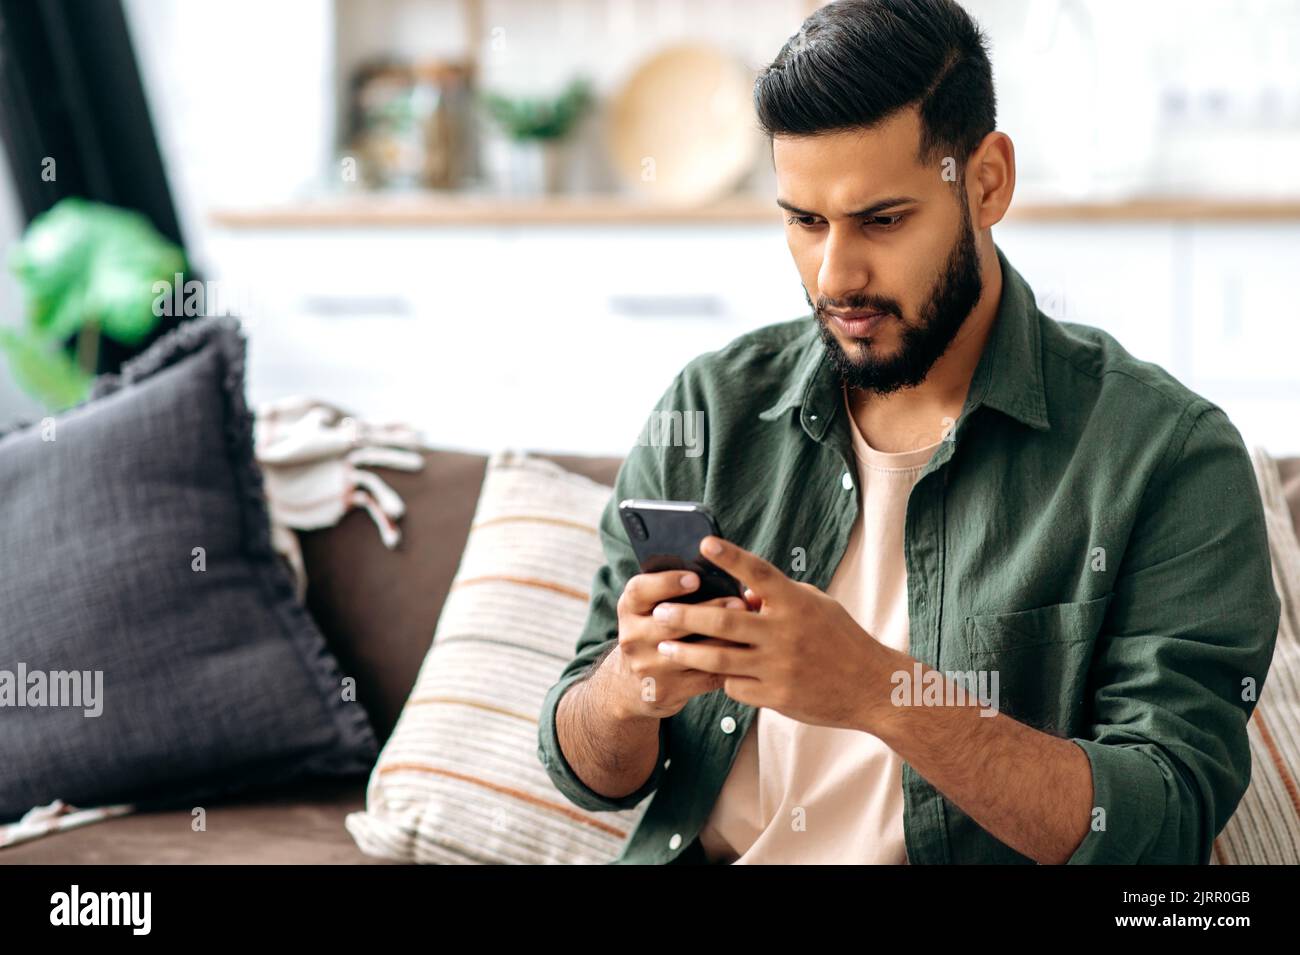 Verwirrten indischen oder arabischen Kerl in Freizeitkleidung, sitzt auf dem Sofa in einem Wohnzimmer, mit Smartphone, SMS online, in sozialen Netzwerken surfen, Nachrichten lesen, Sieht den Bildschirm verwirrt an. Wireless-Technologien Stockfoto